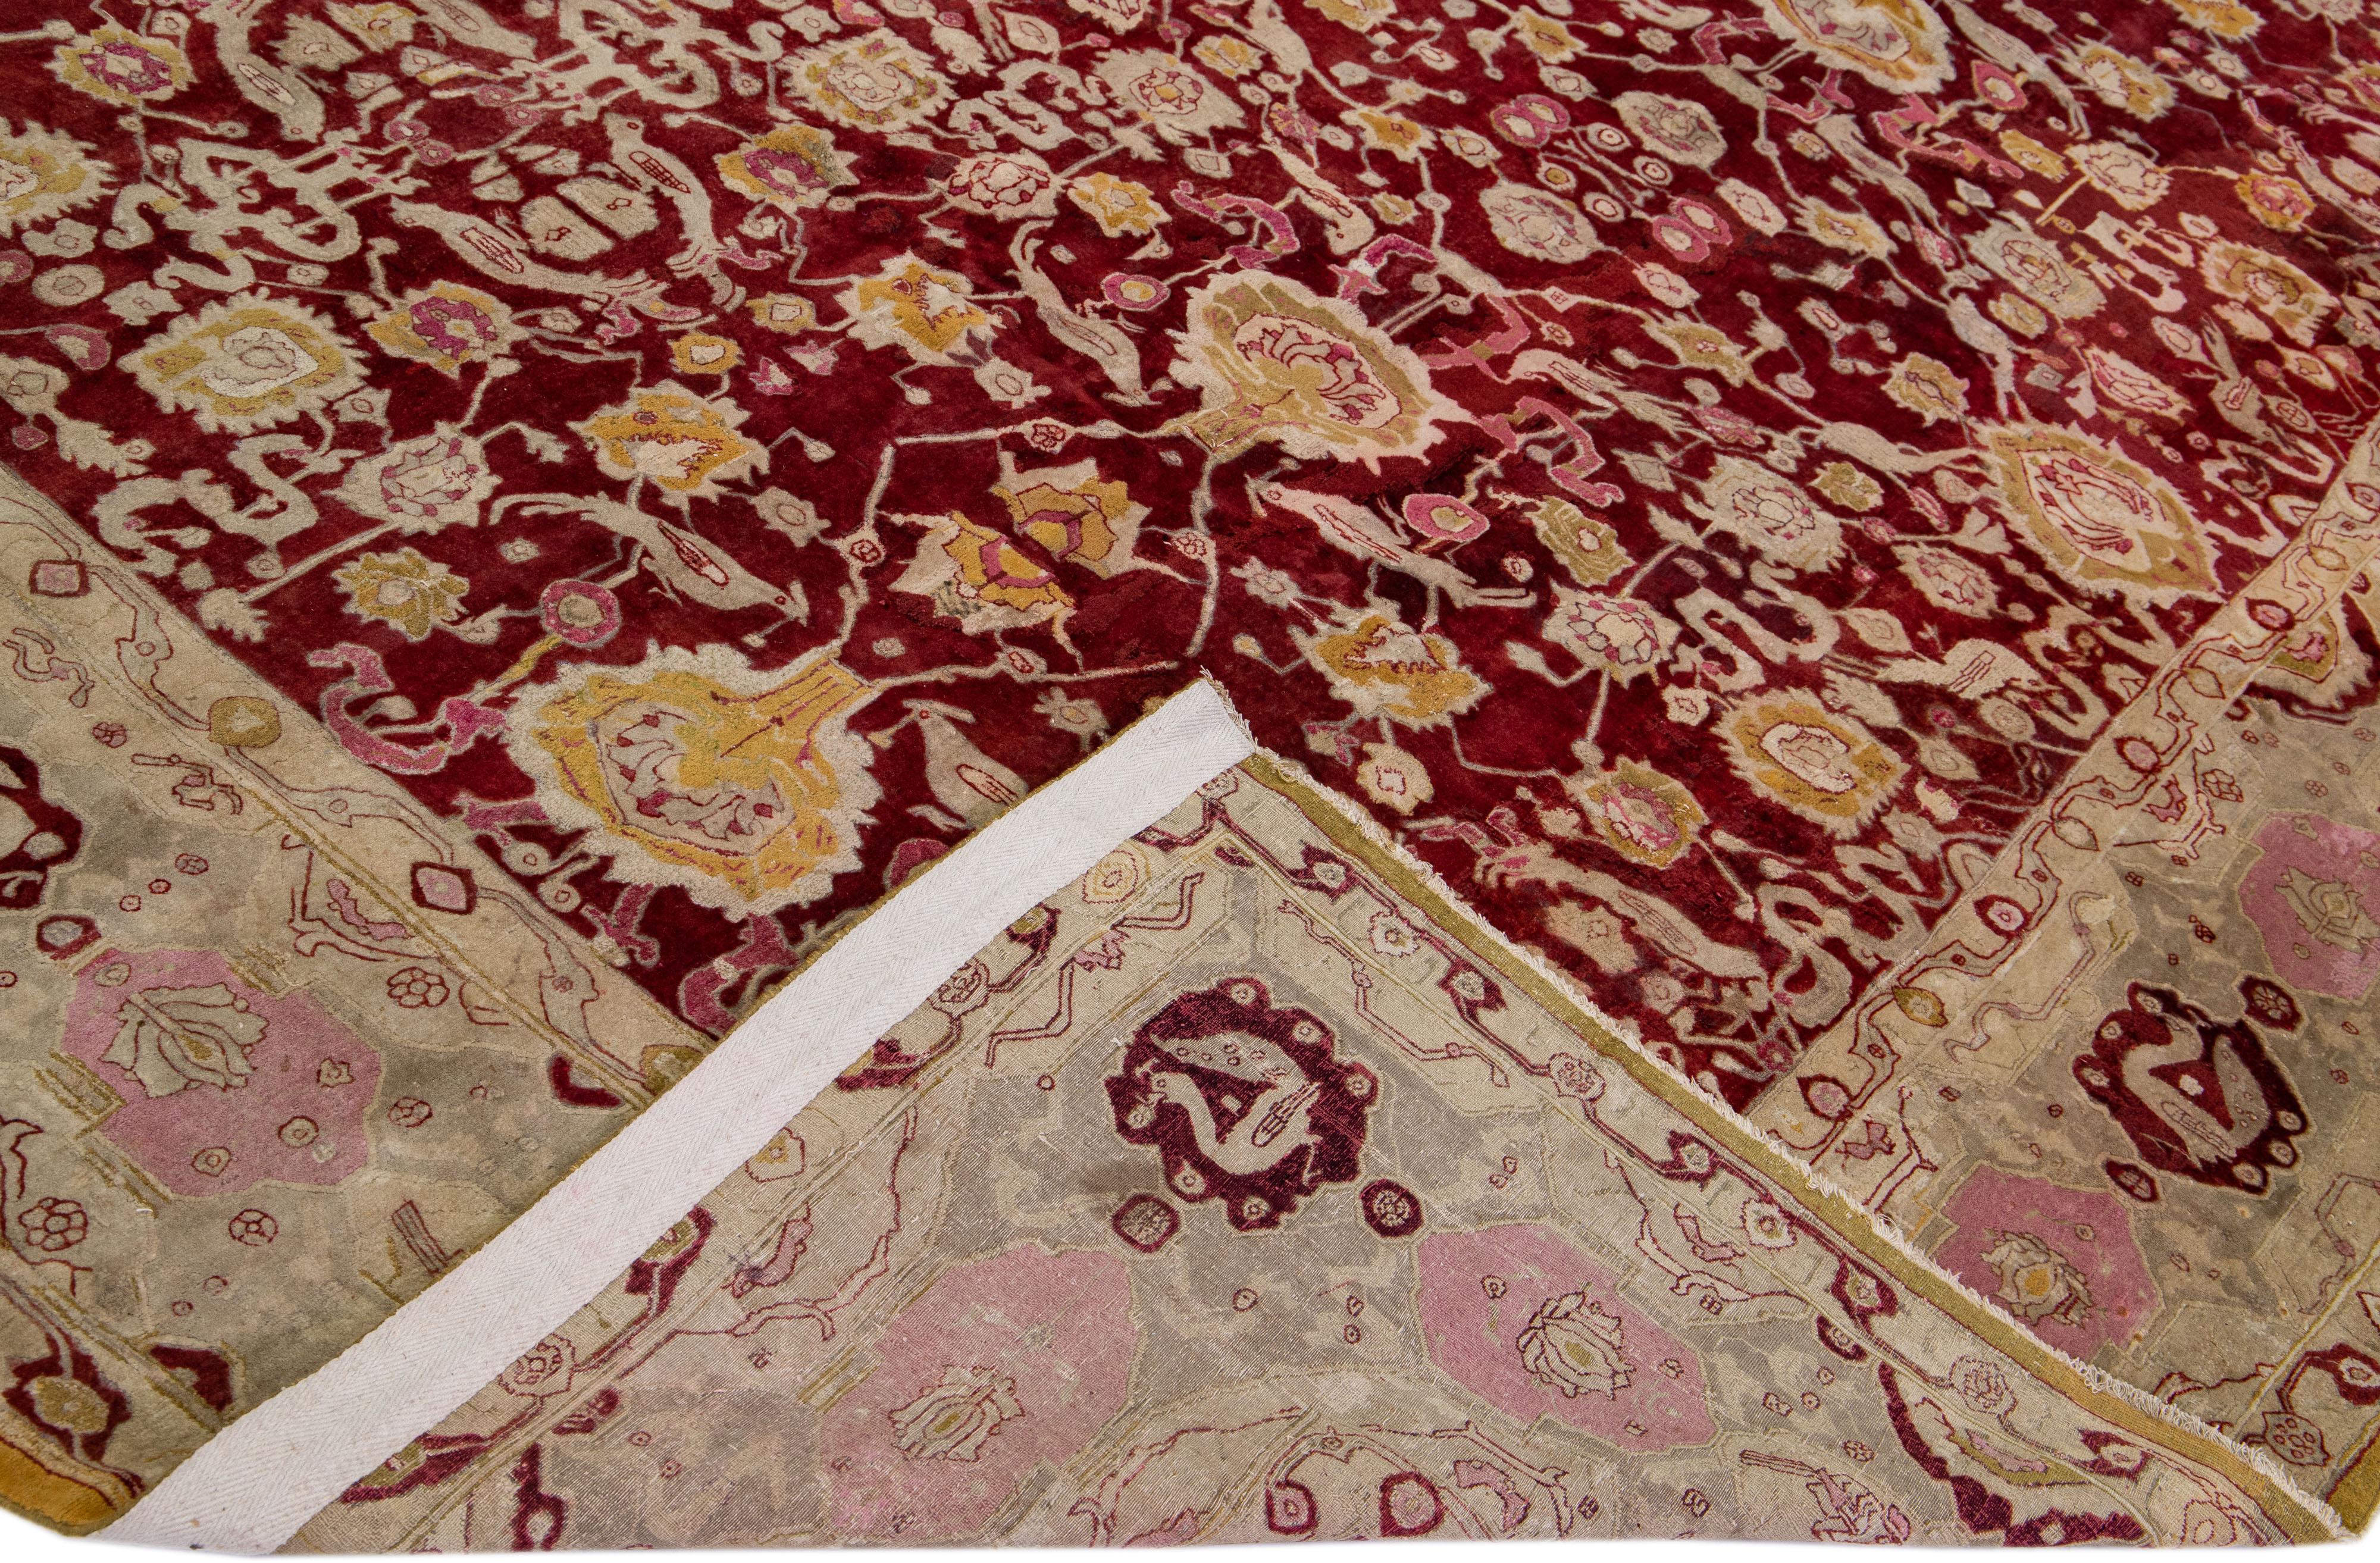 Magnifique tapis antique Agra en laine nouée à la main avec un champ rouge. Ce tapis indien présente des accents de beige, de rose et de verge d'or dans un magnifique motif floral.

Ce tapis mesure : 11'10